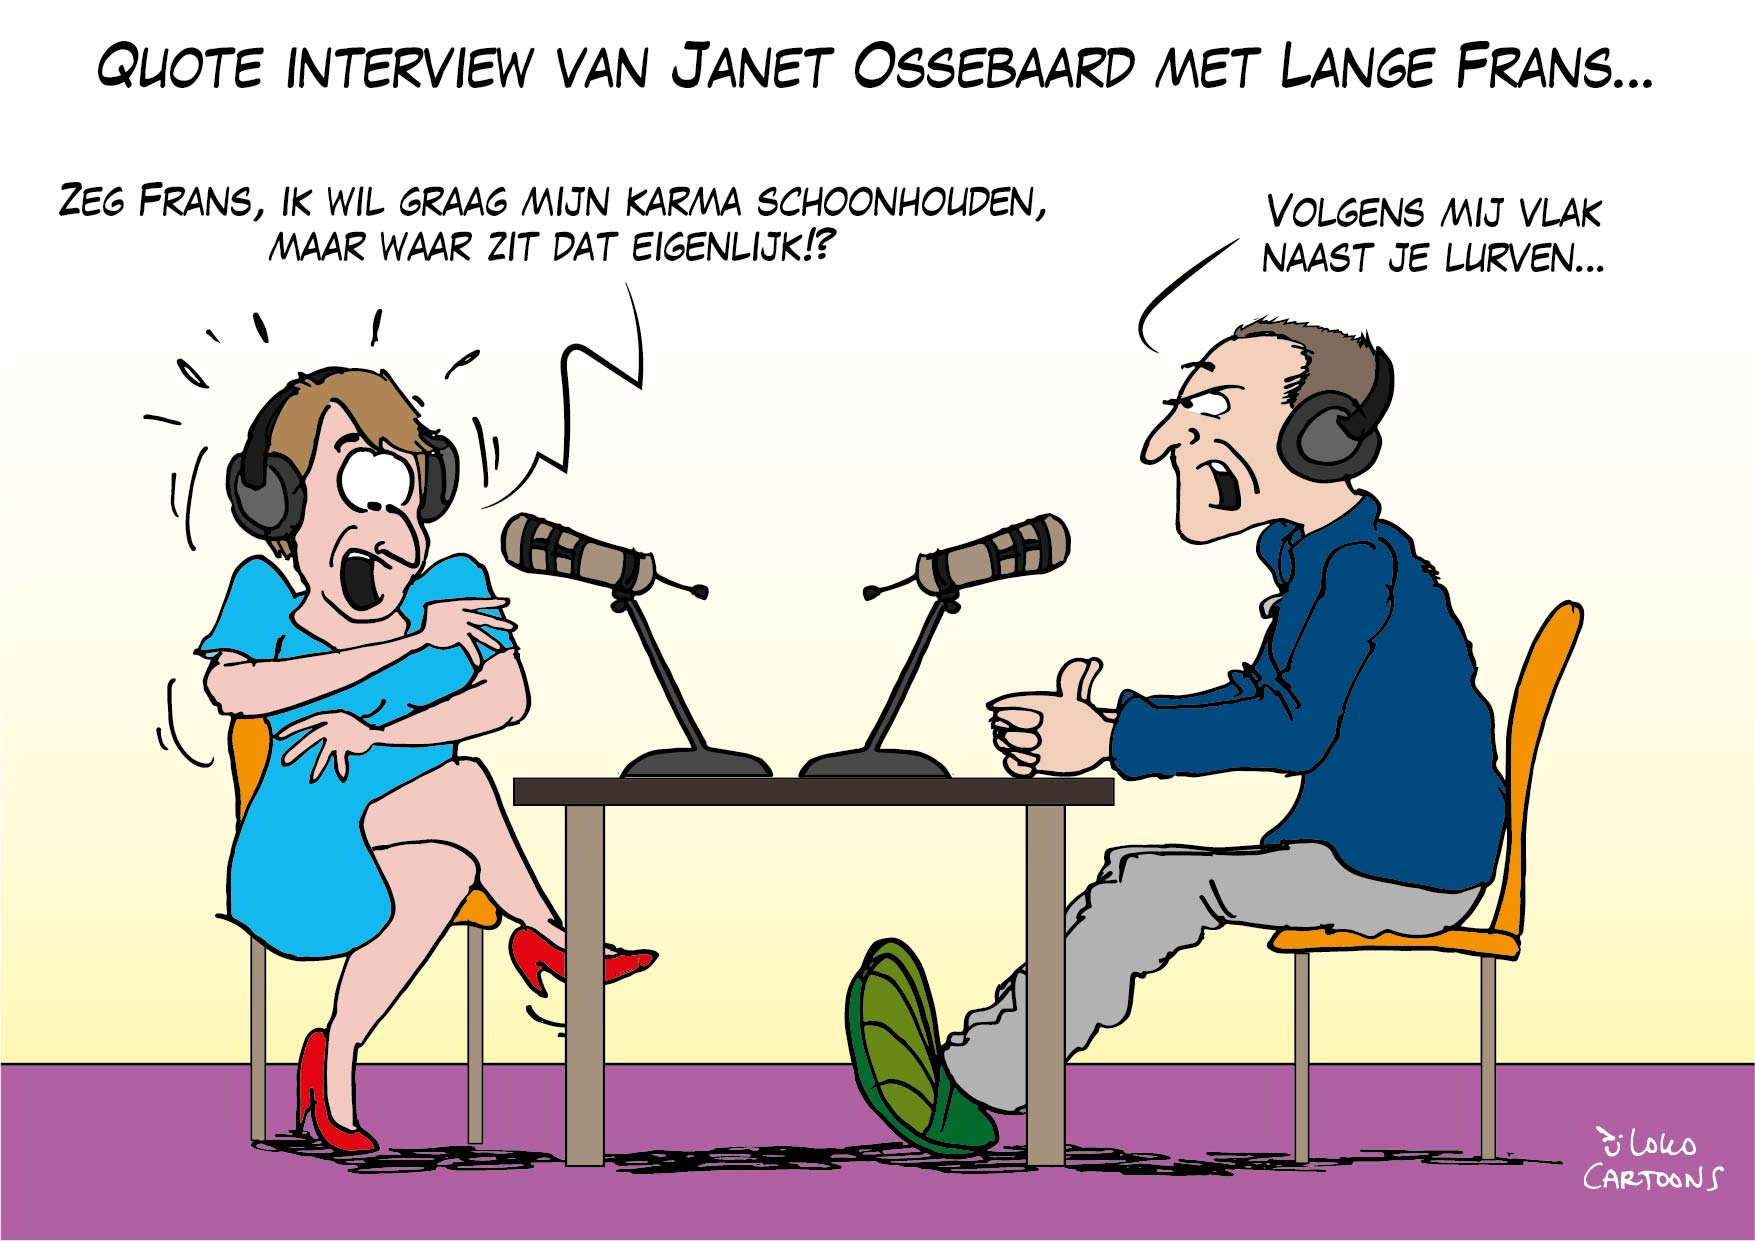 Quote interview van Janet Ossenbaard met Lange Frans…